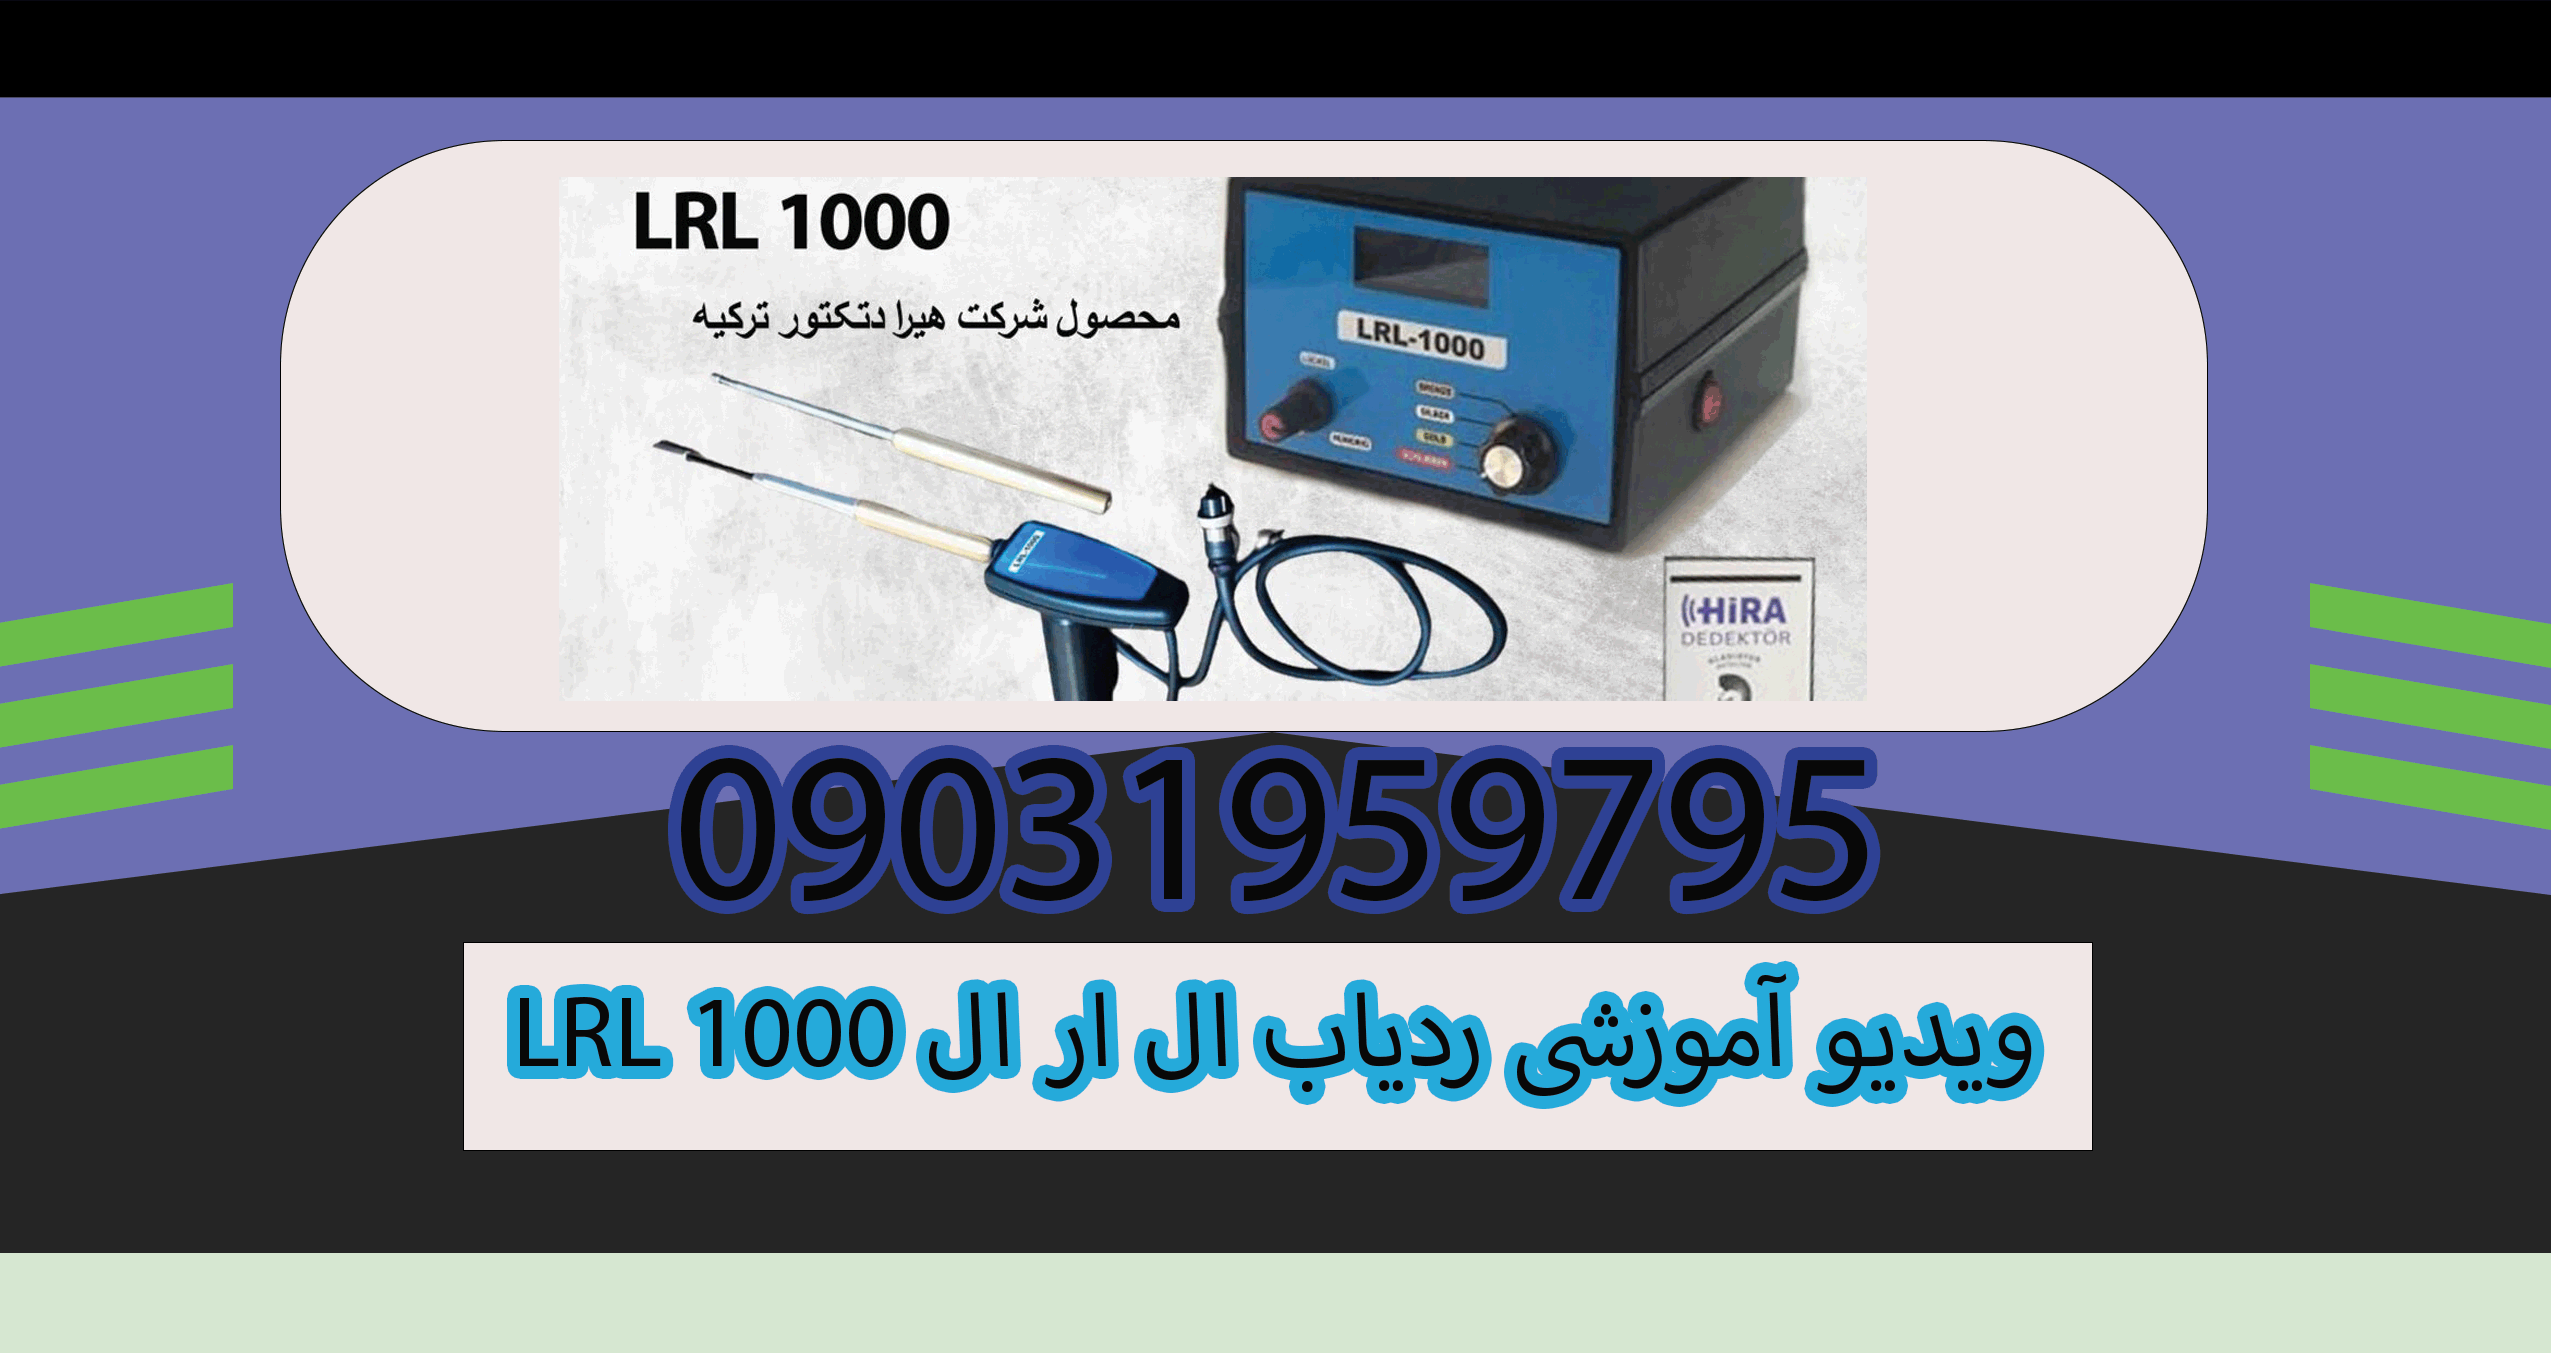 LRL 1000